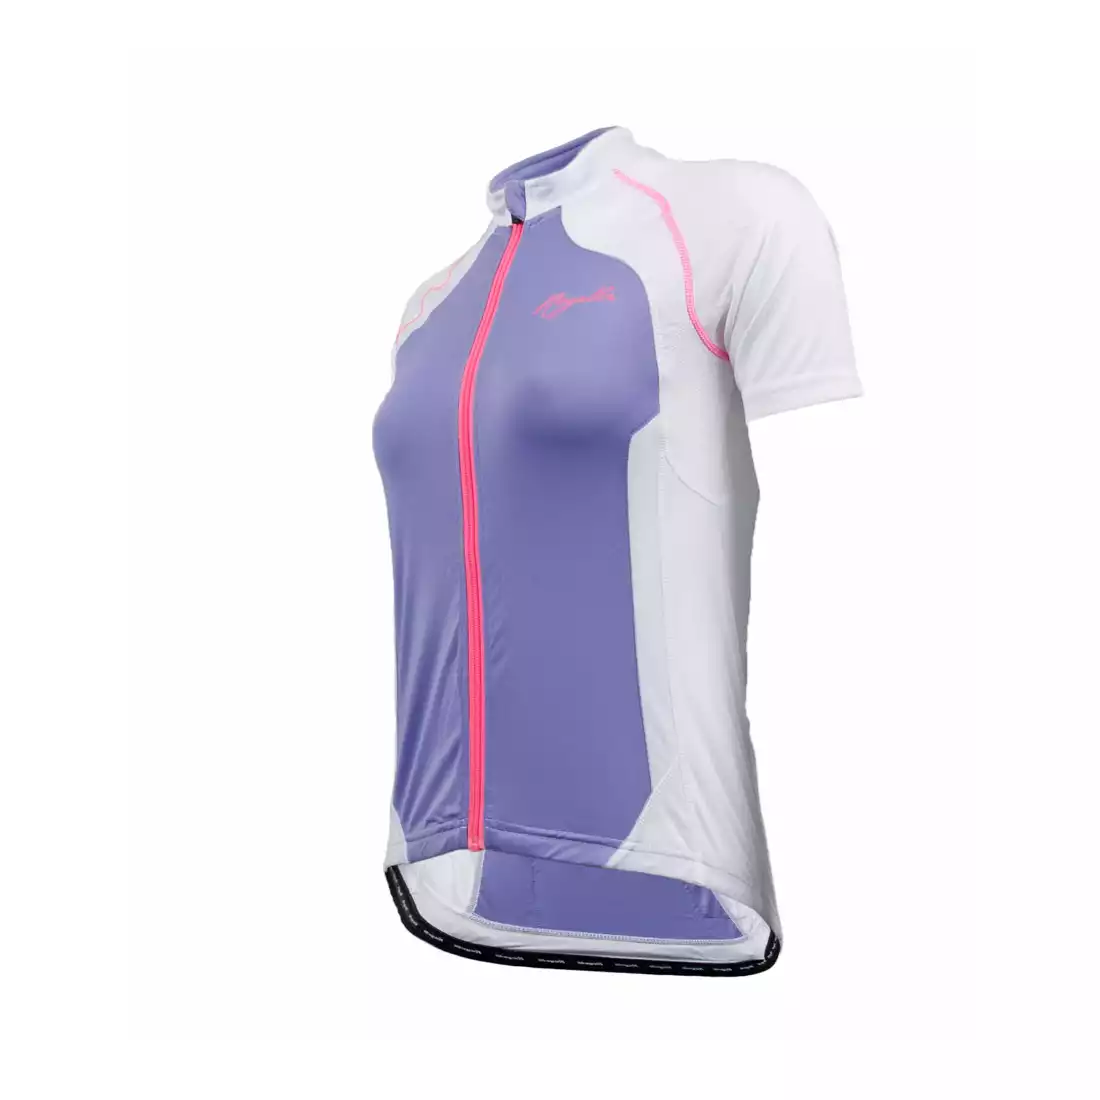 ROGELLI BICE - damska koszulka rowerowa, fioletowo-biała